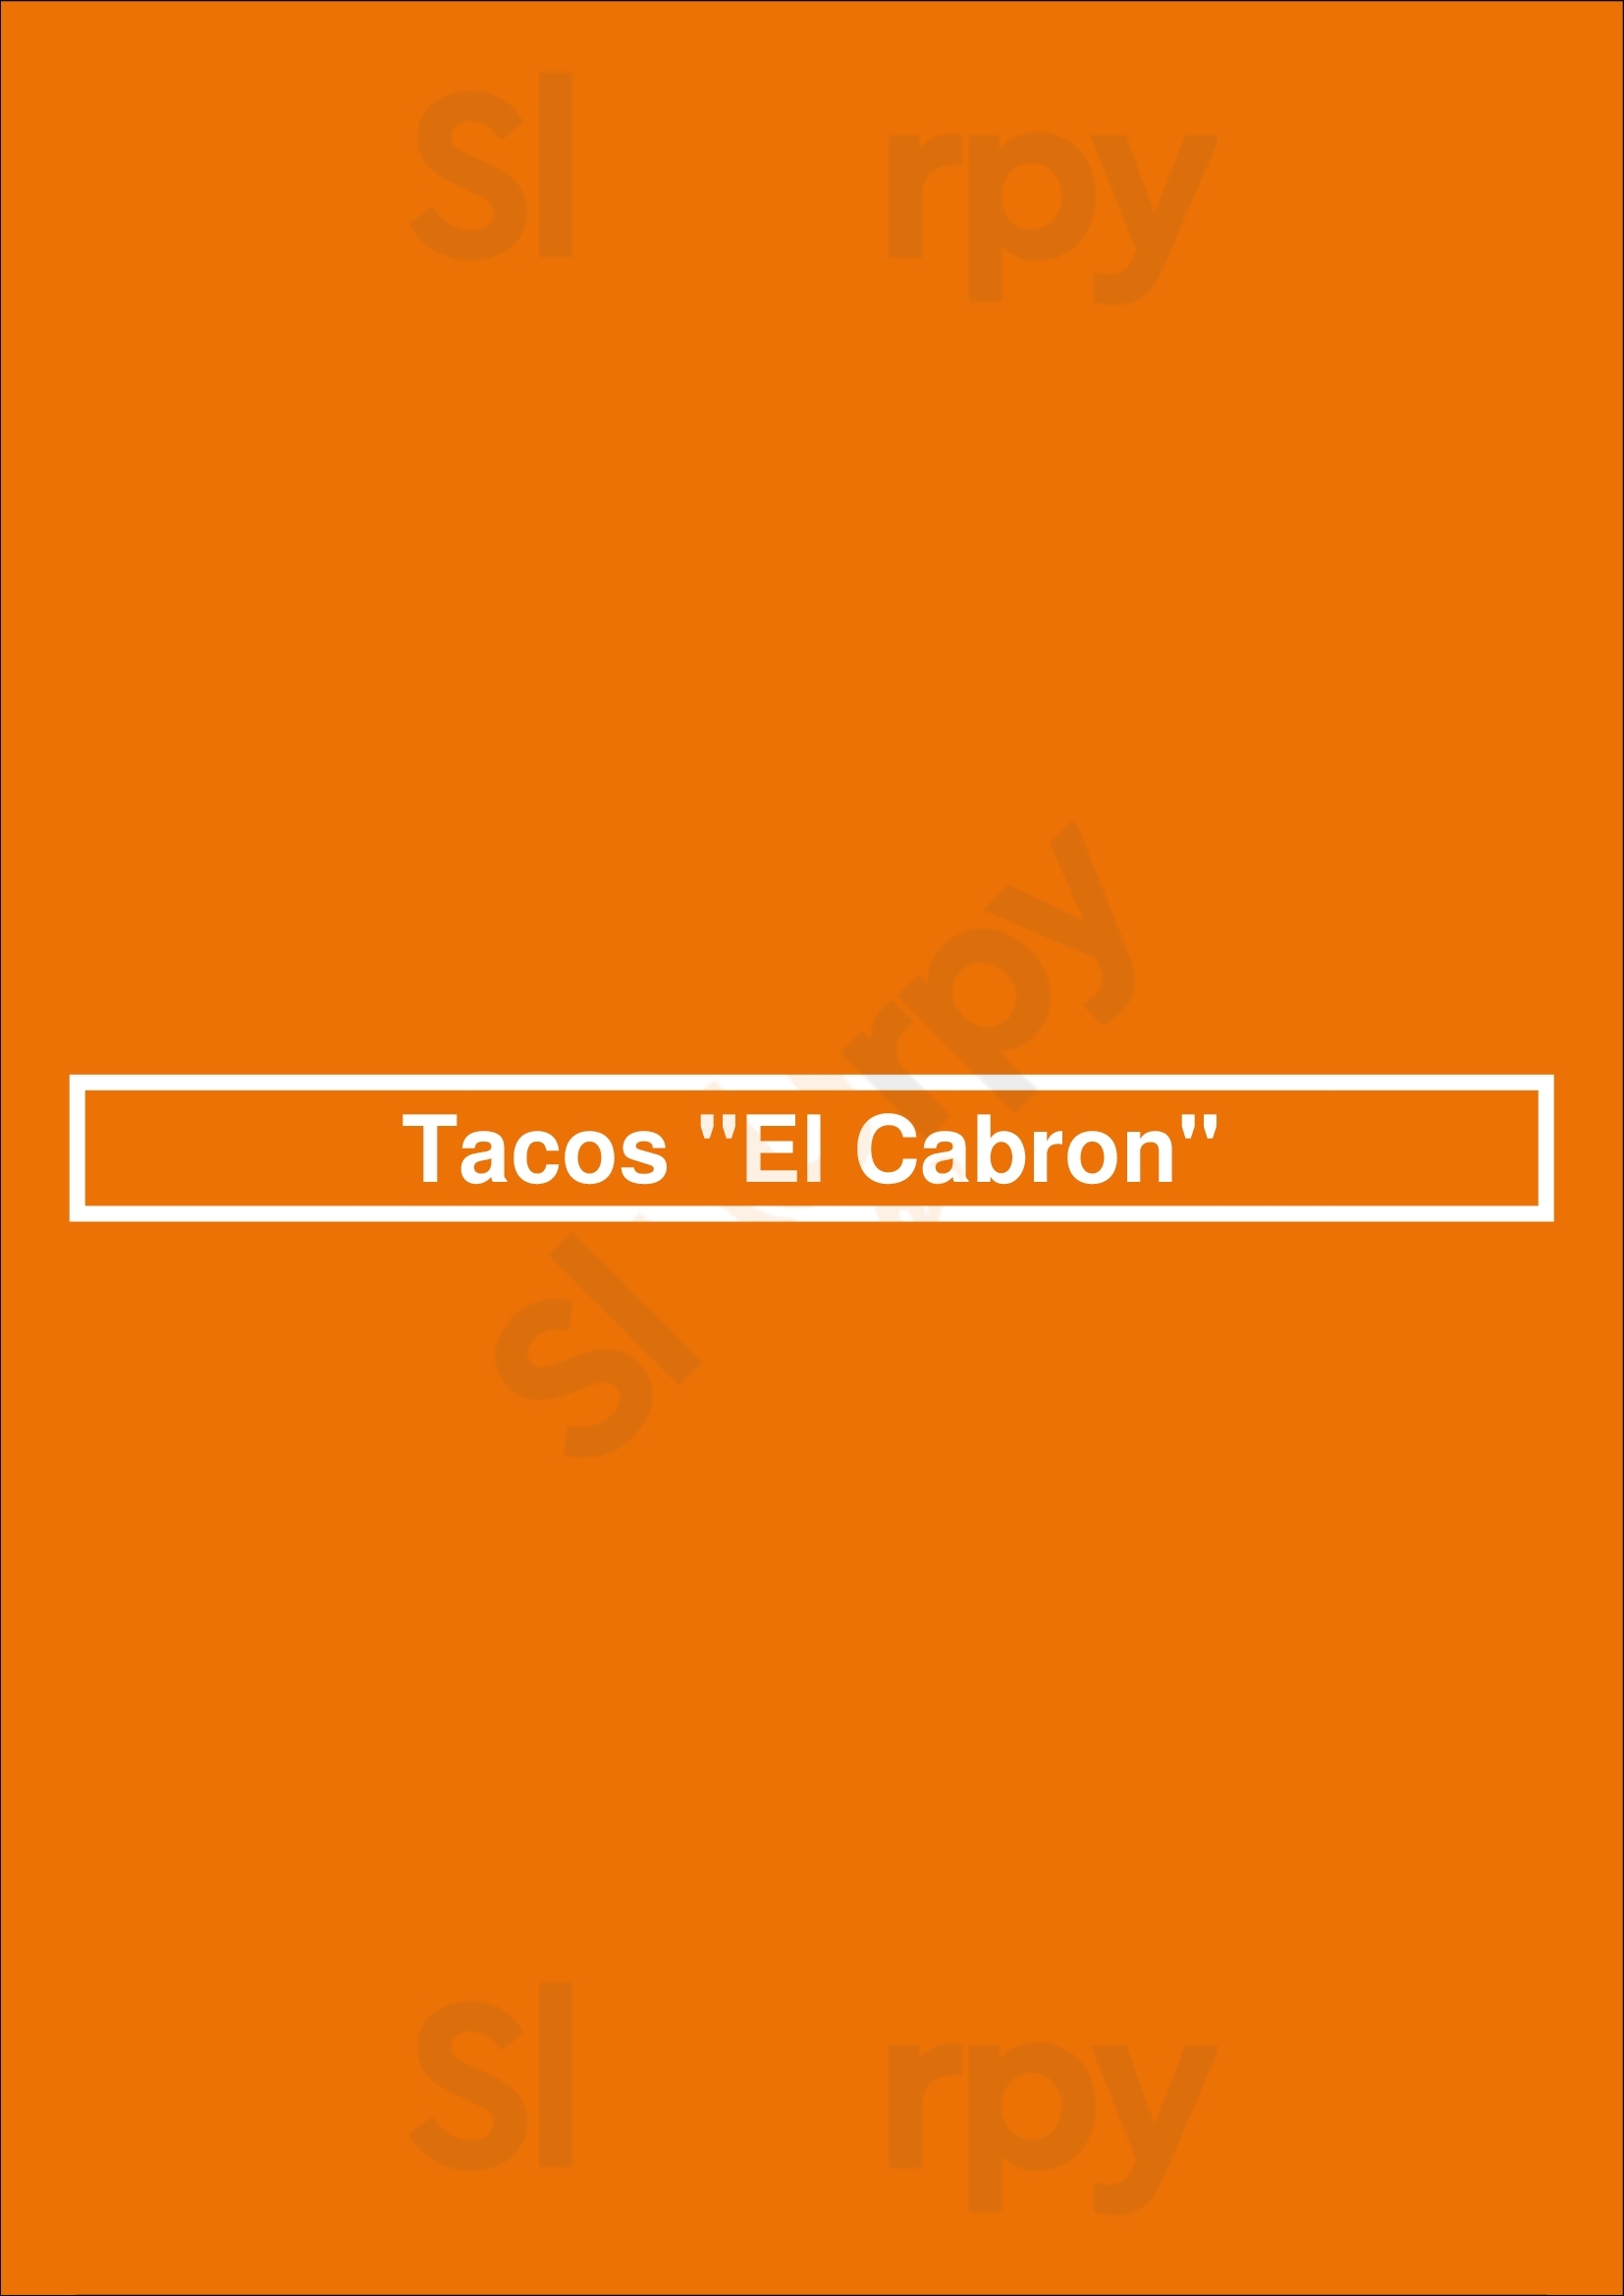 Tacos "el Cabron" San Diego Menu - 1